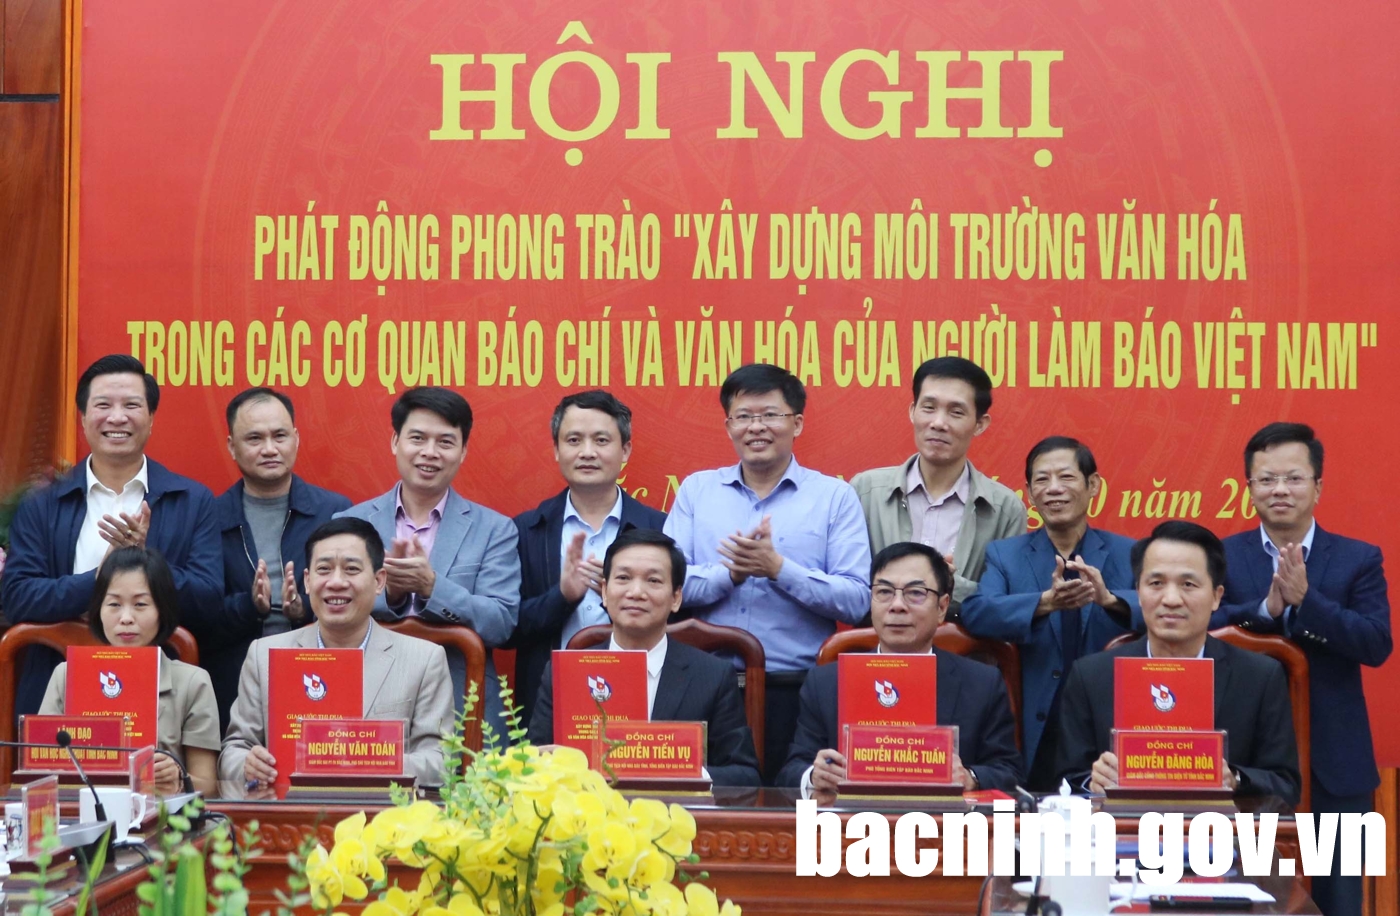 Hội nghị xây dựng môi trường văn hóa trong các cơ quan báo chí và văn hóa của người làm báo Việt Nam